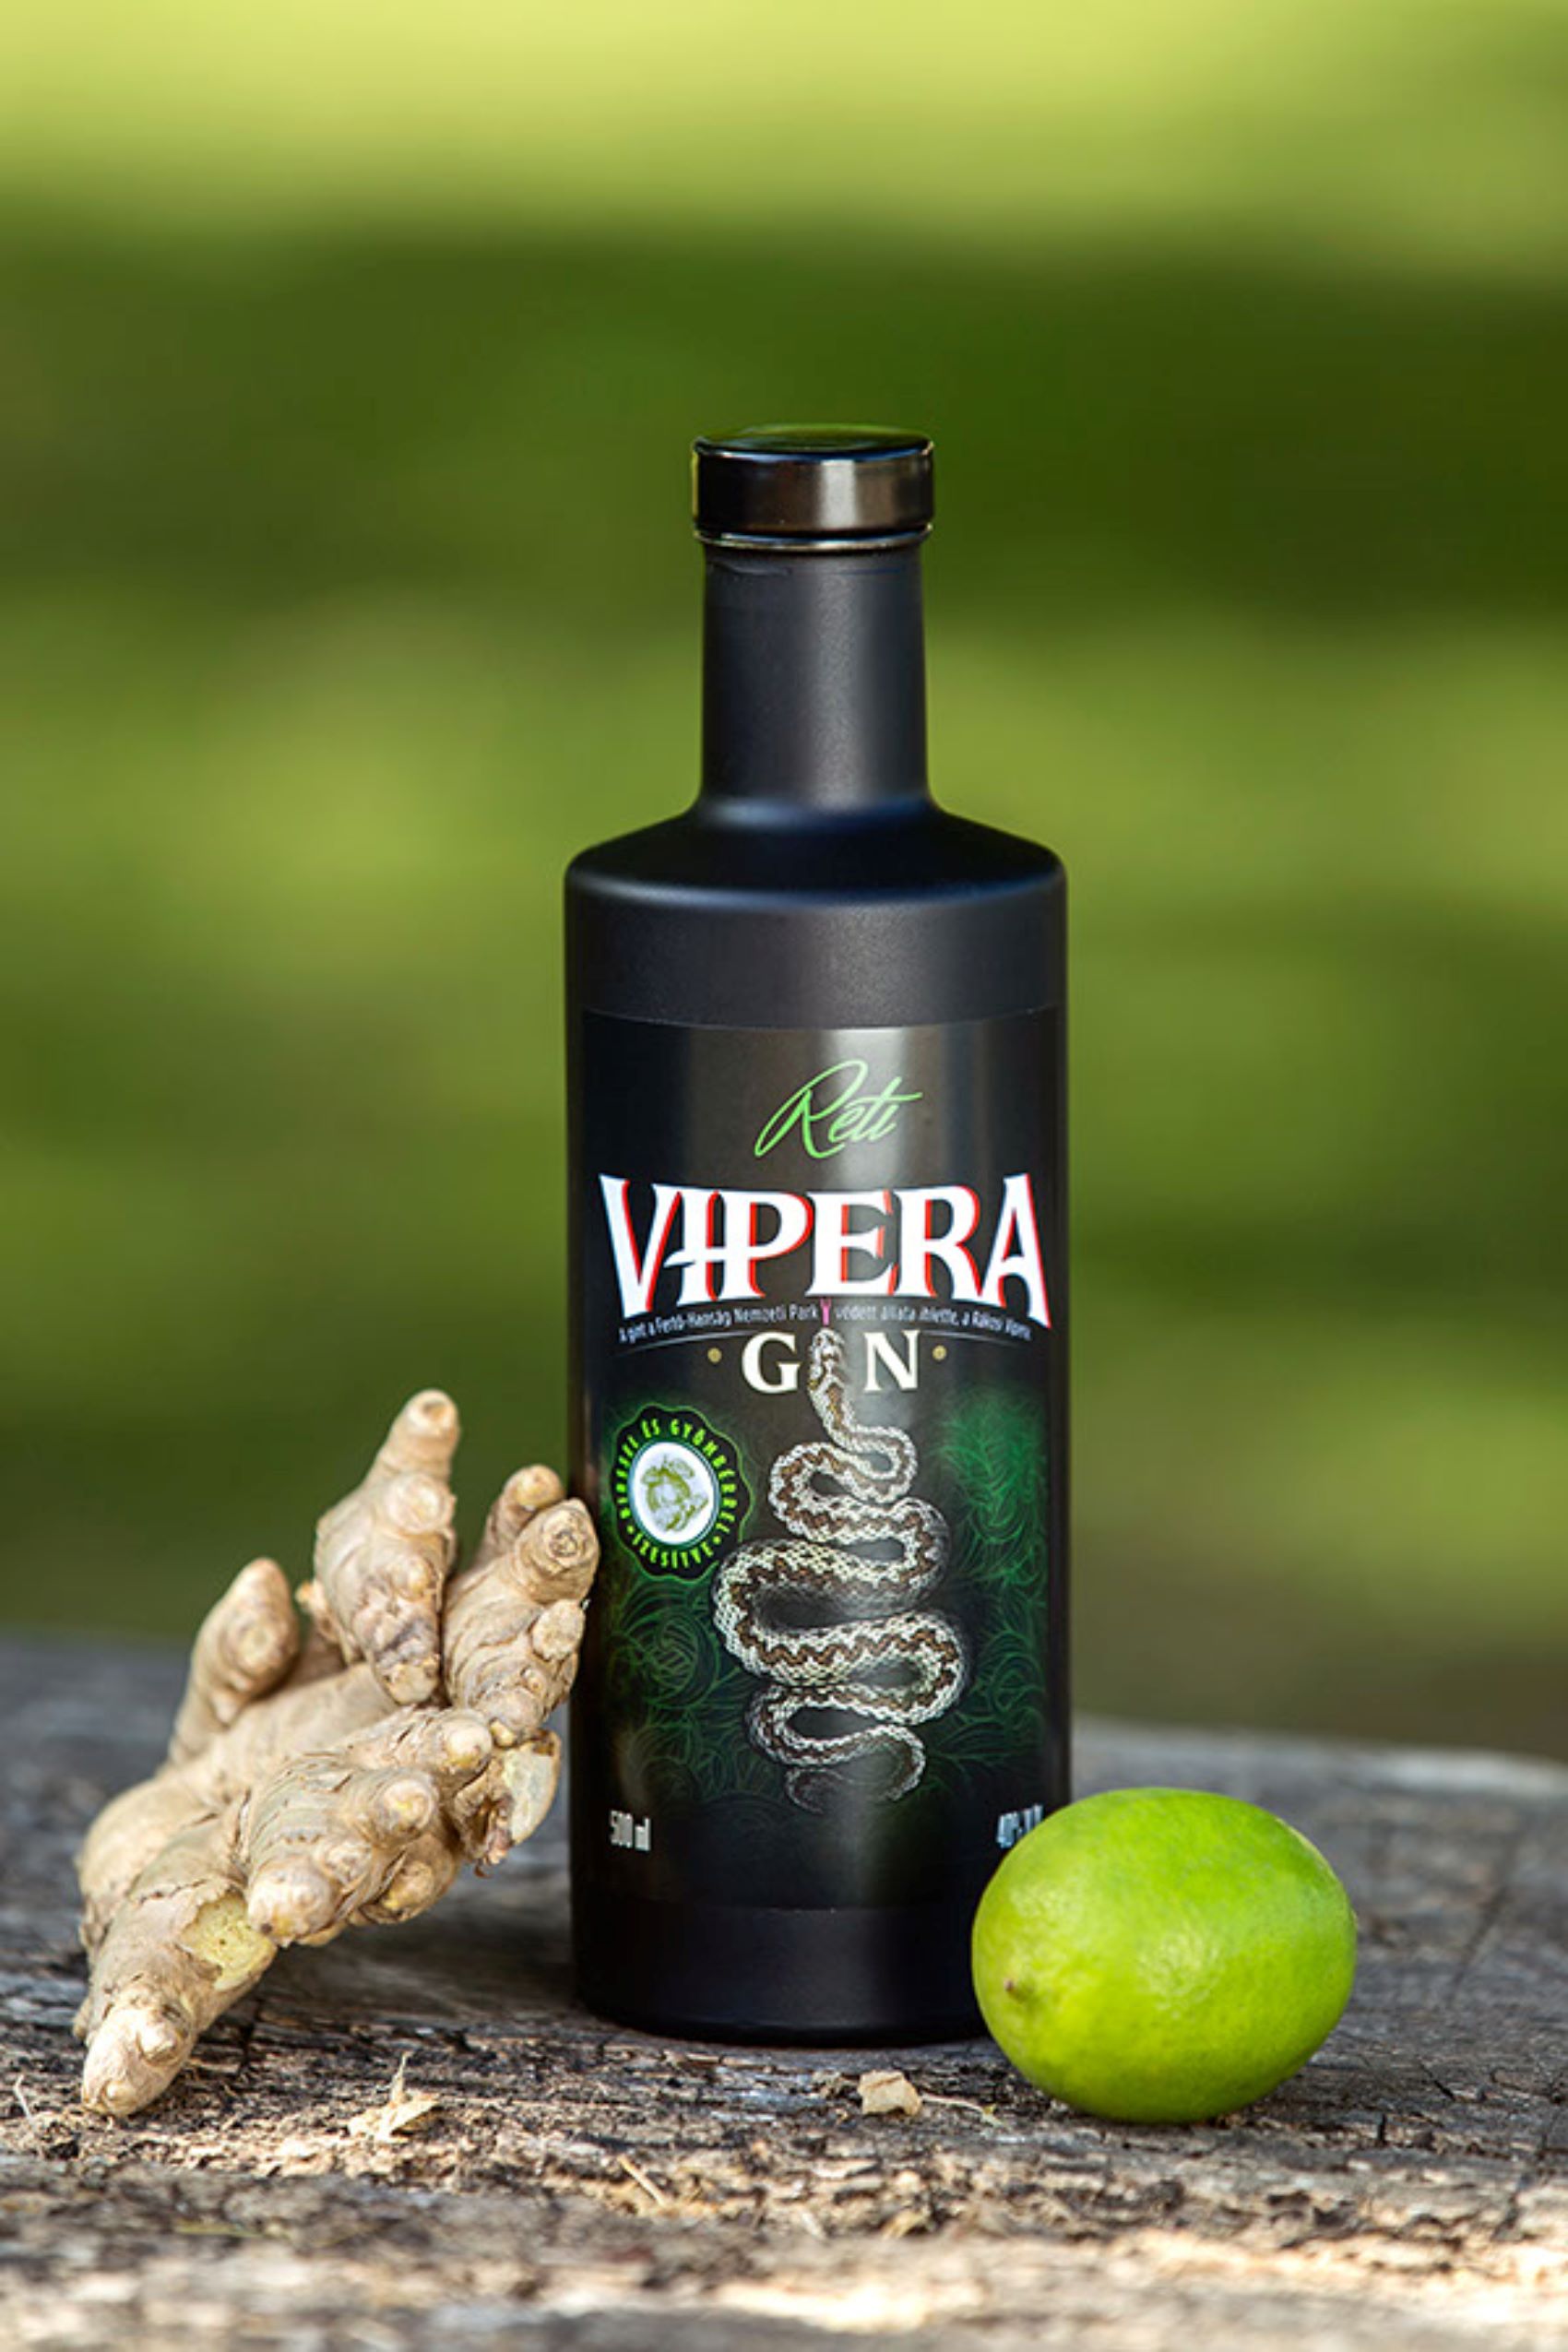 Réti Vipera Gin 600x800